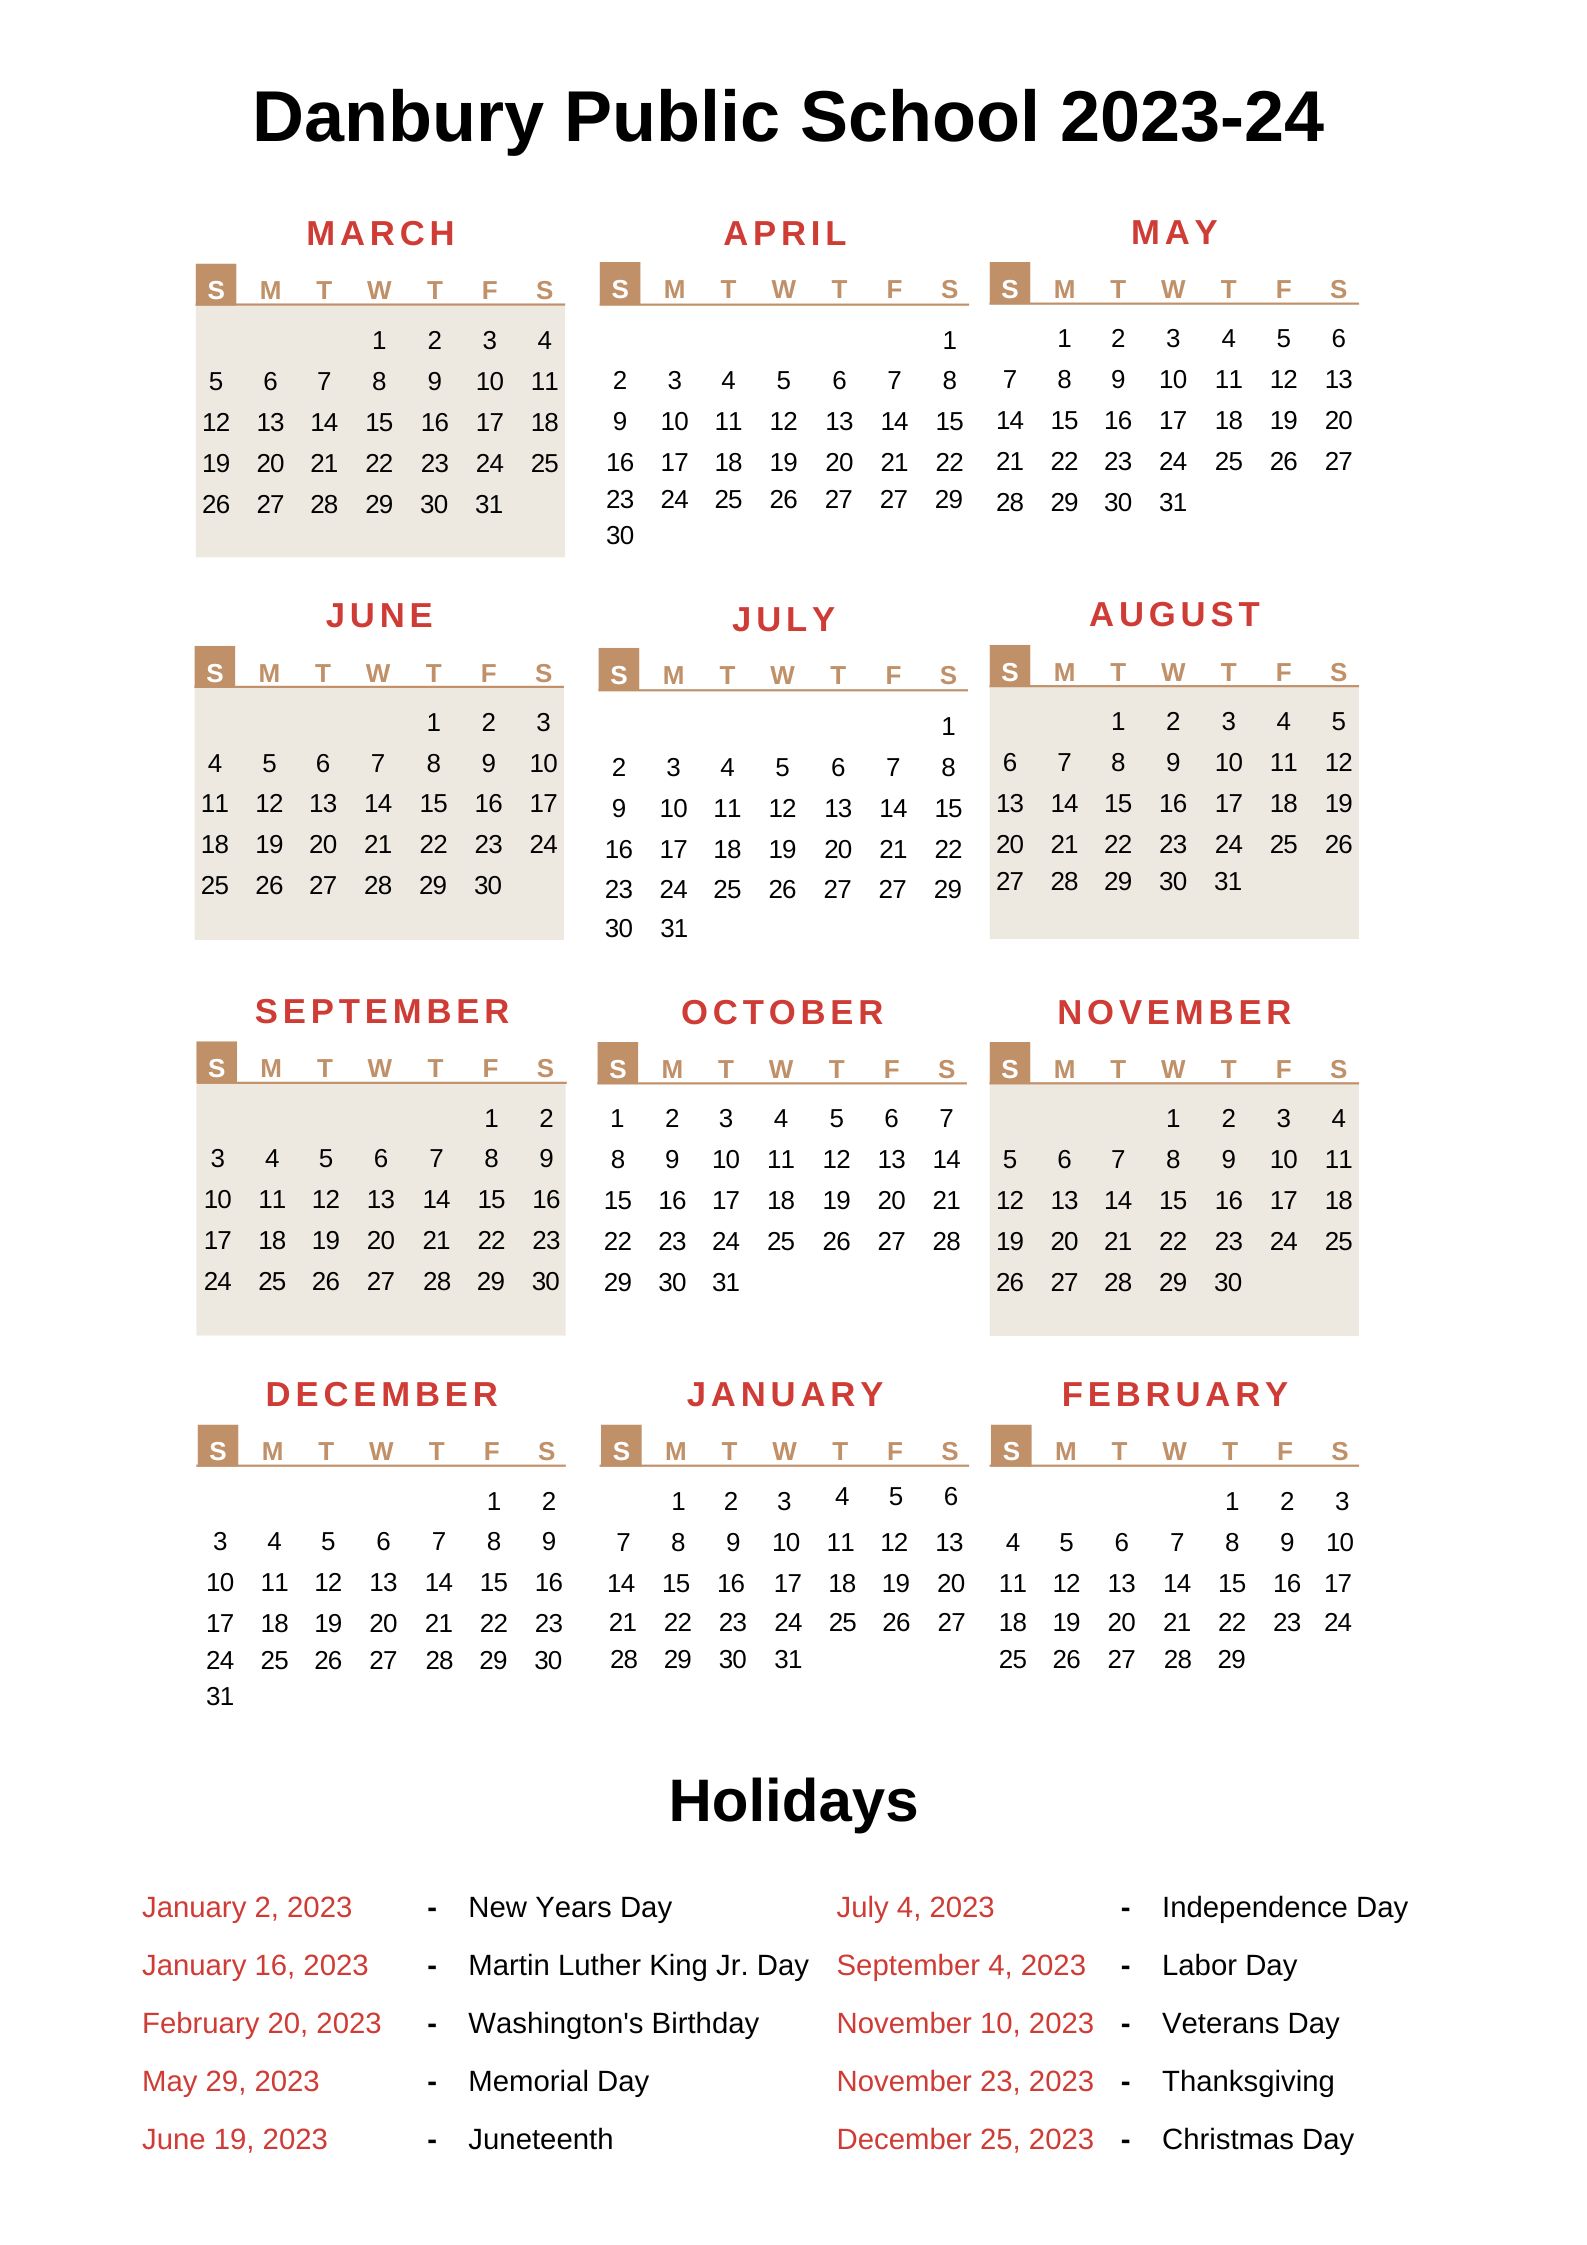 danbury-public-schools-calendar-dps-2023-24-with-holidays